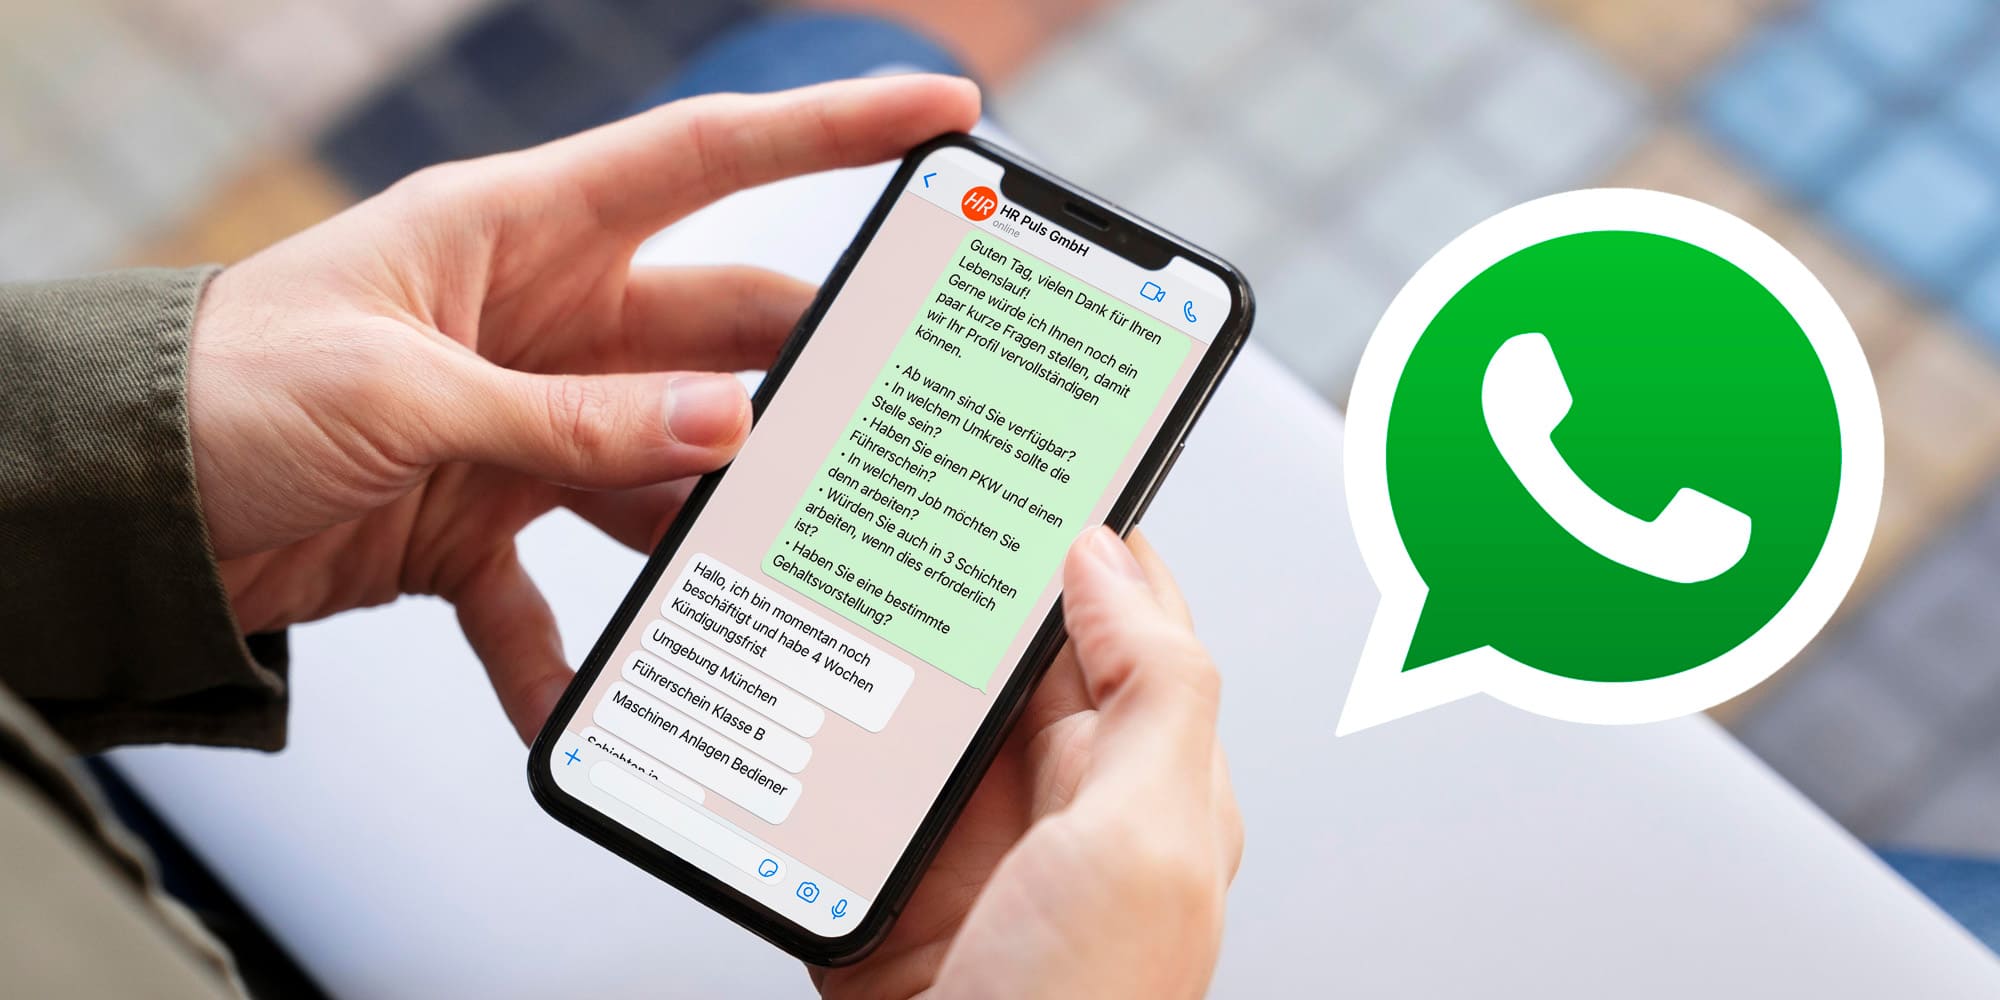 Ein Smartphone, auf dem Whatsapp geöffnet ist und ein Bewerbungsprozess innerhalb der App dargestellt wird